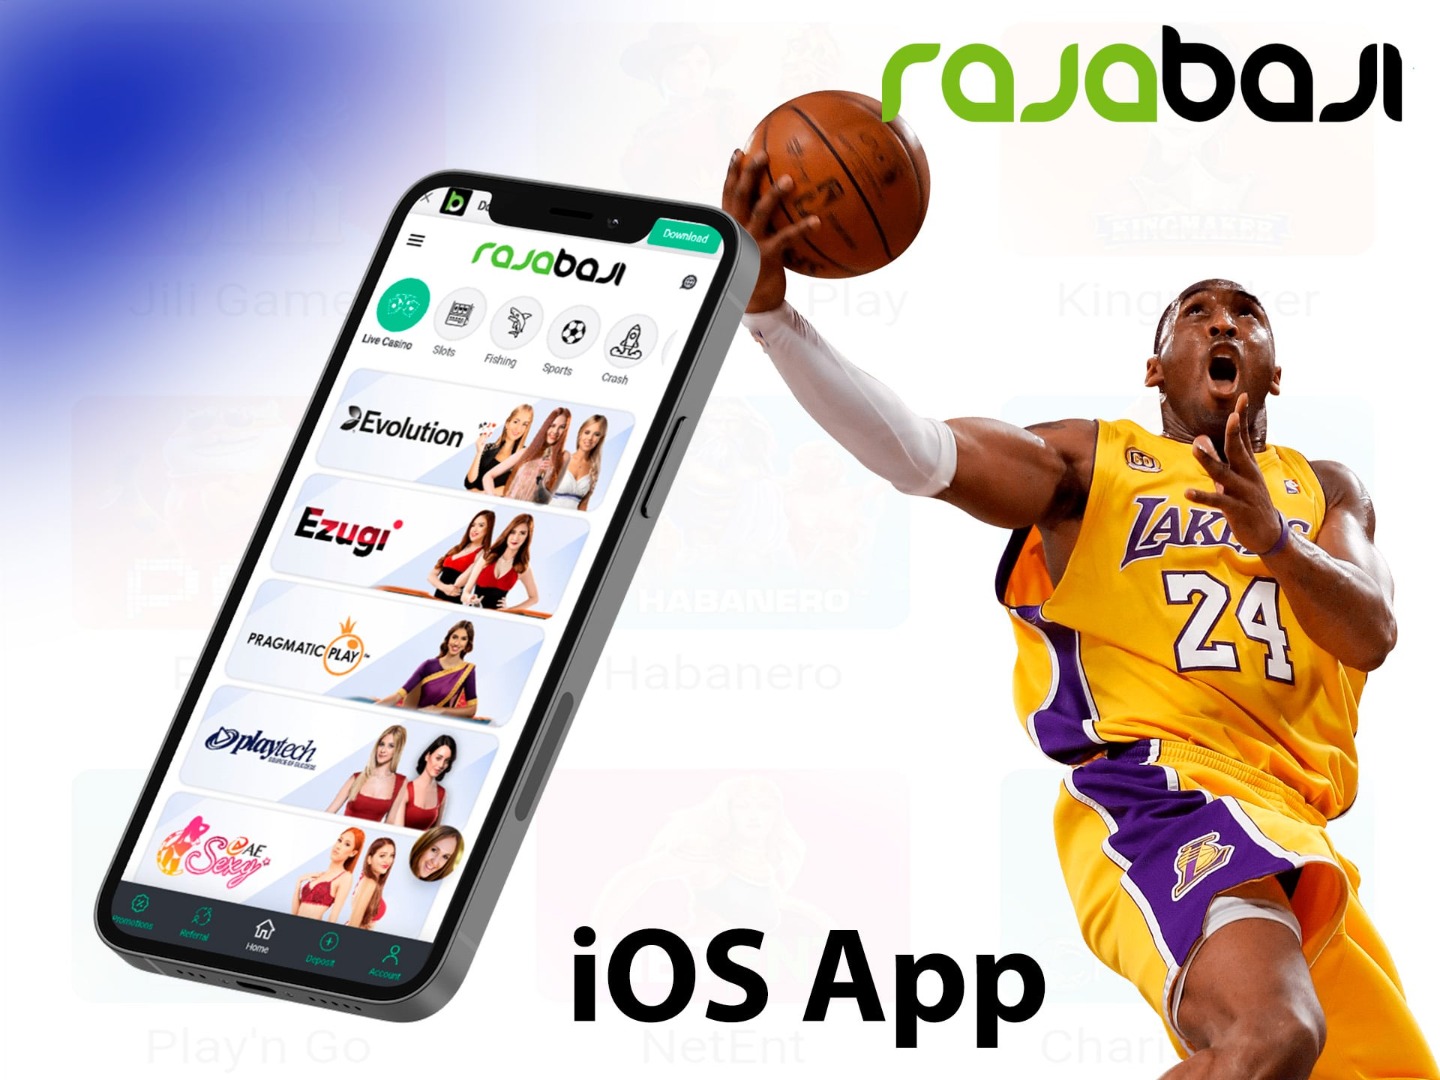 Rajabaji App Apk Download